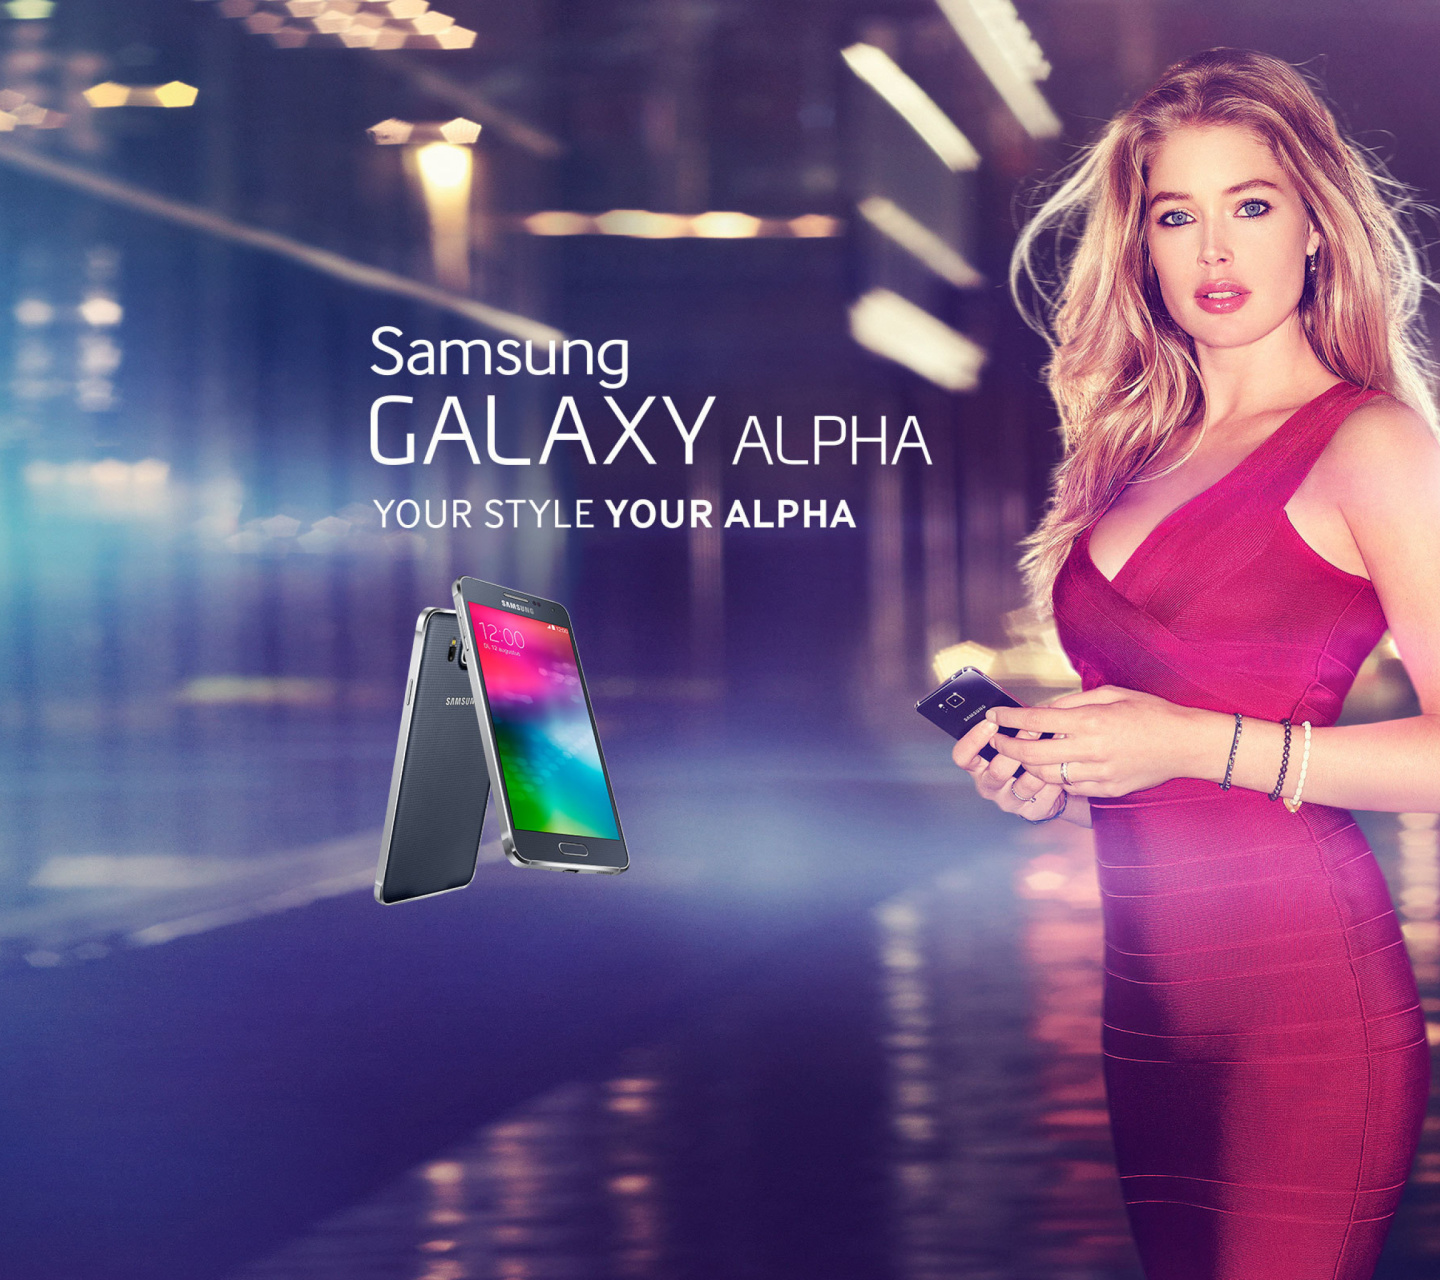 Samsung Galaxy Alpha Advertisement with Doutzen Kroes wallpaper 1440x1280